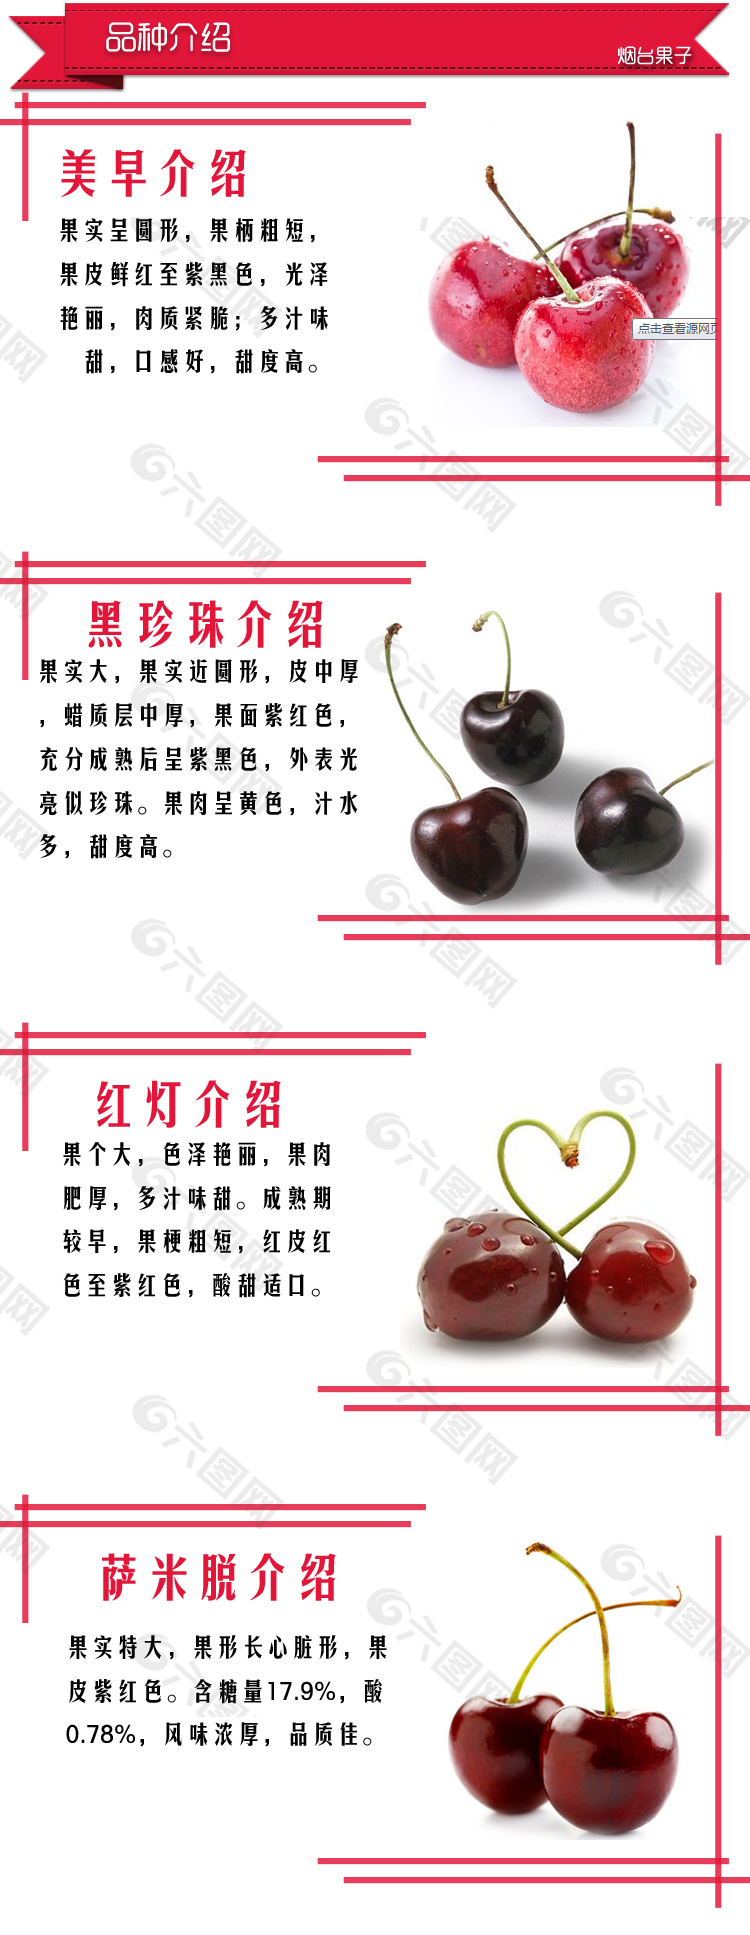 樱桃品种